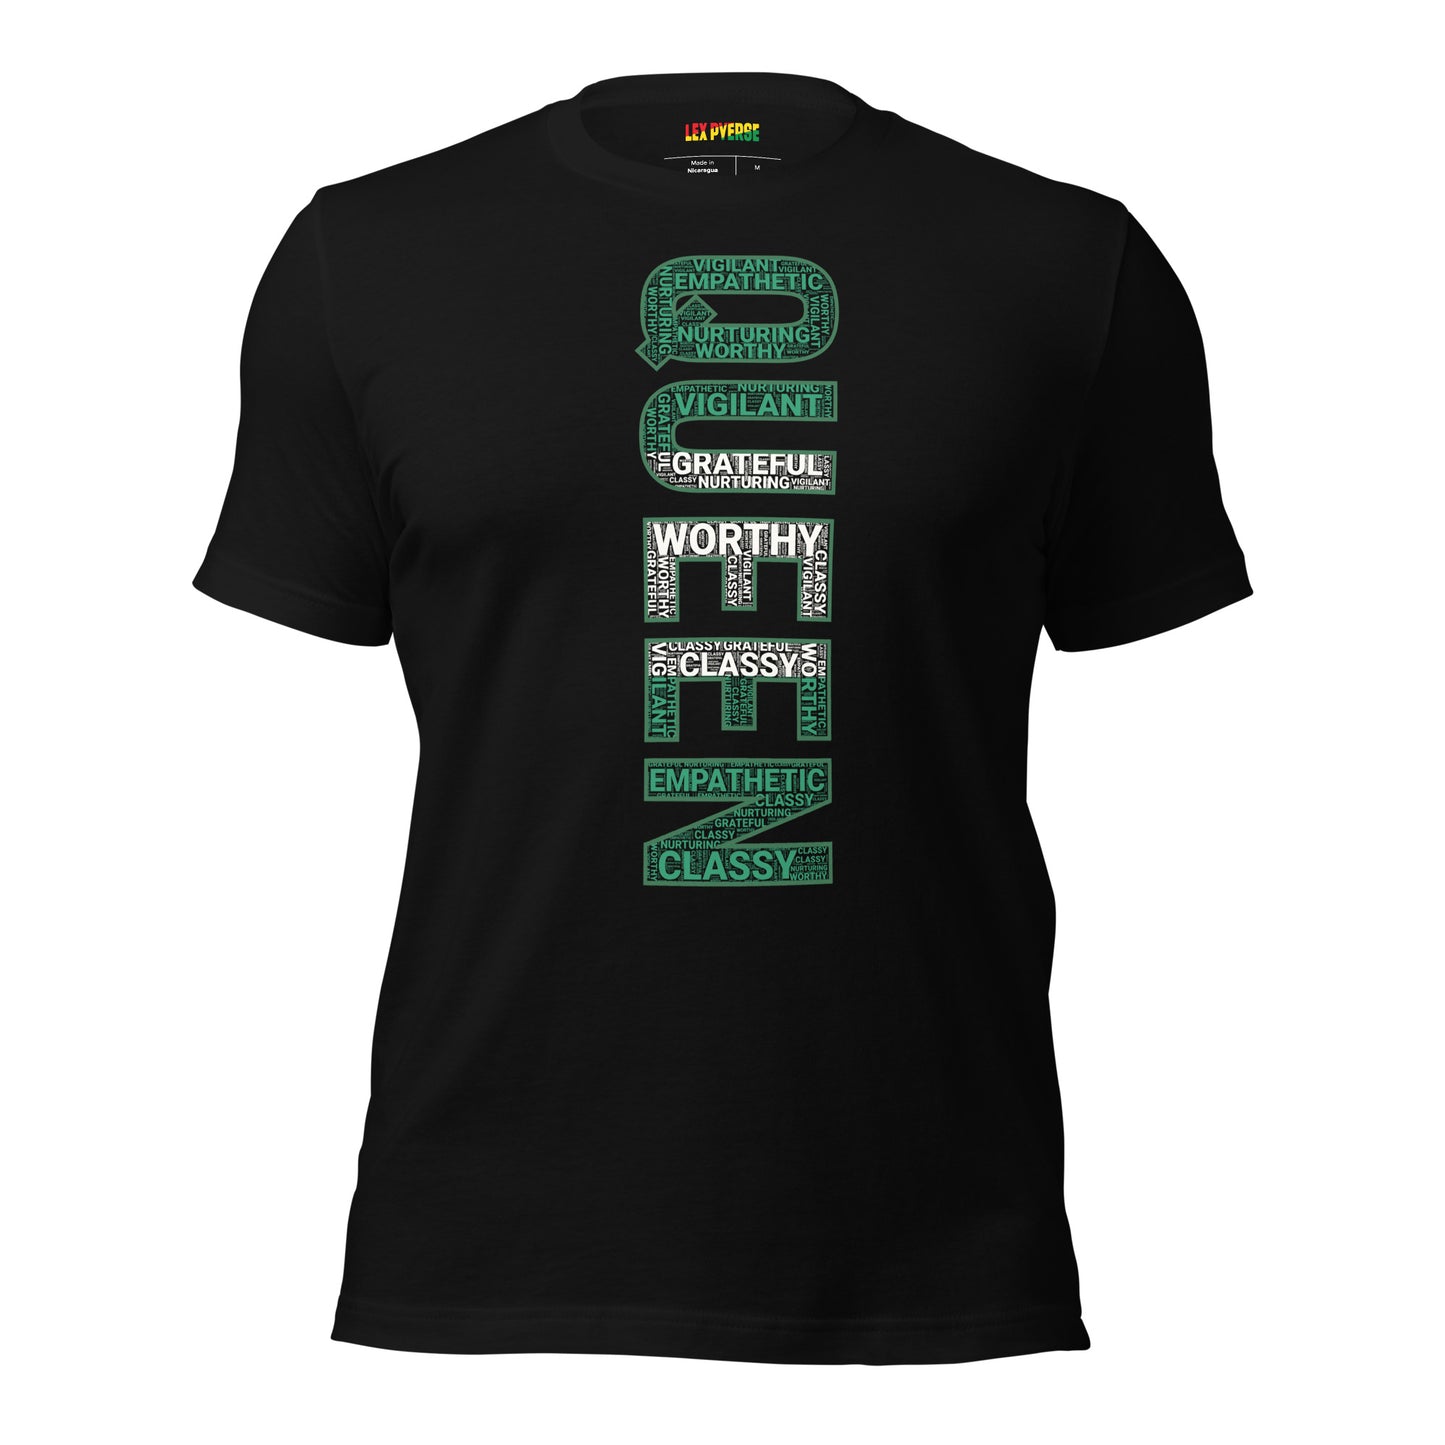 QUEEN (Vertical) Nigerian Inspired Short-Sleeve Unisex T-Shirt